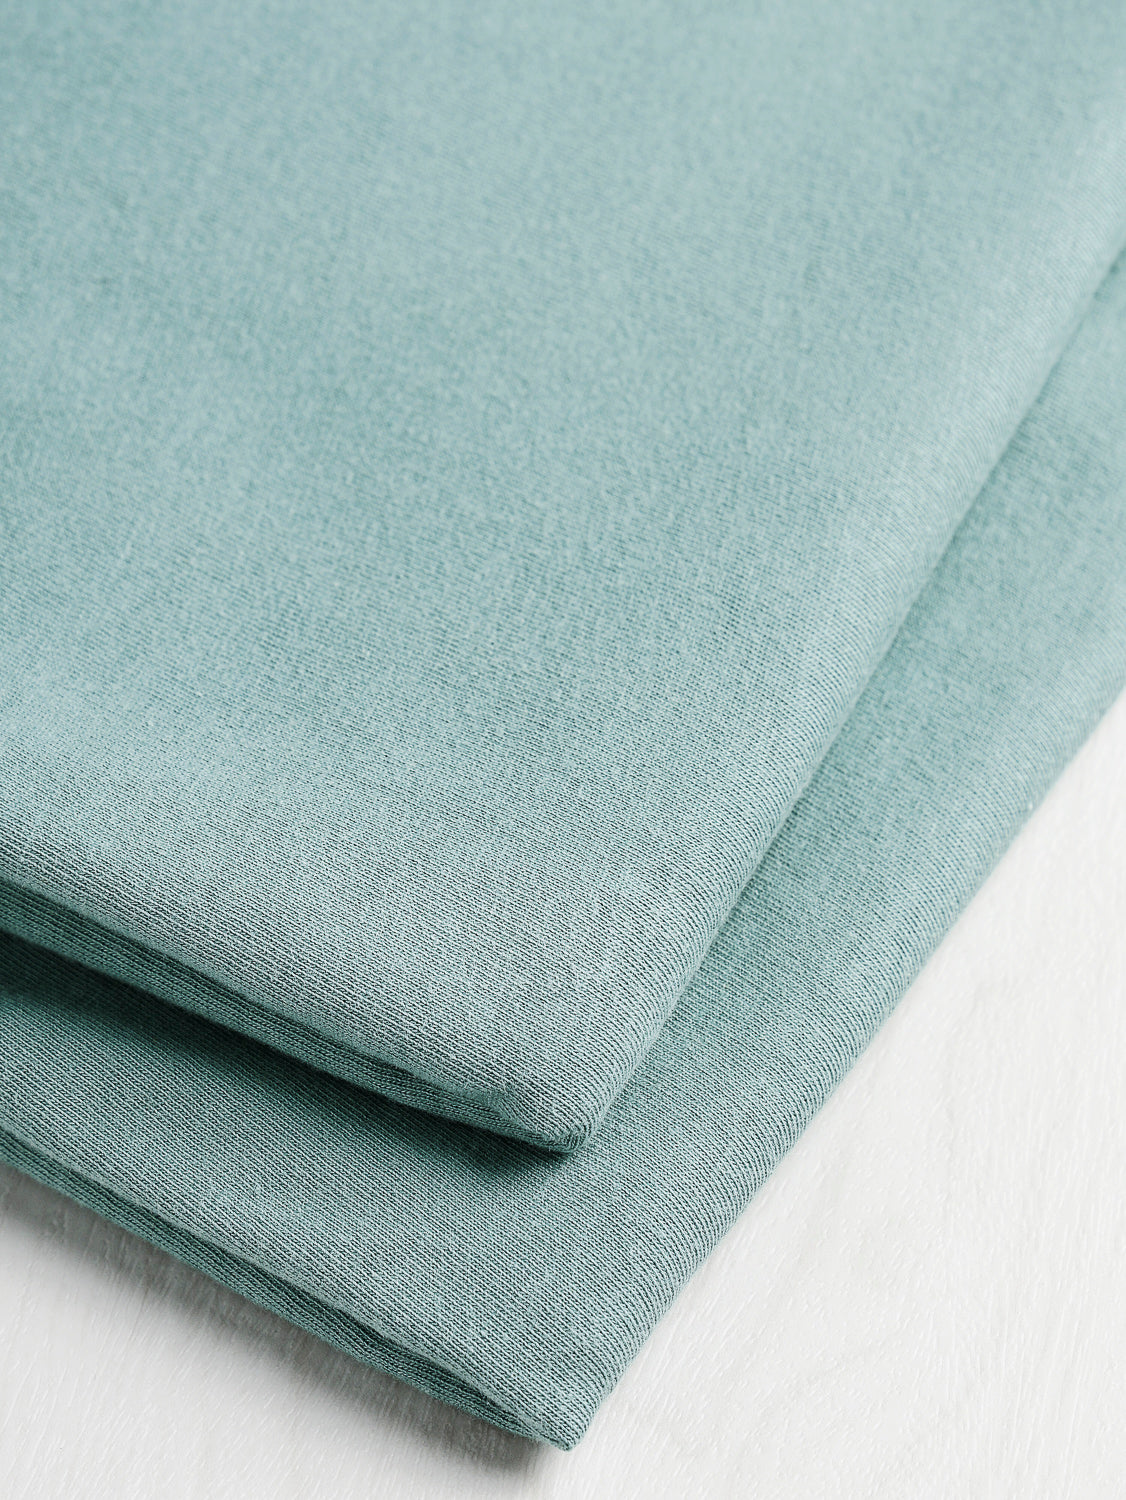 Organic Cotton Jersey Knit - Teal | Core Fabrics